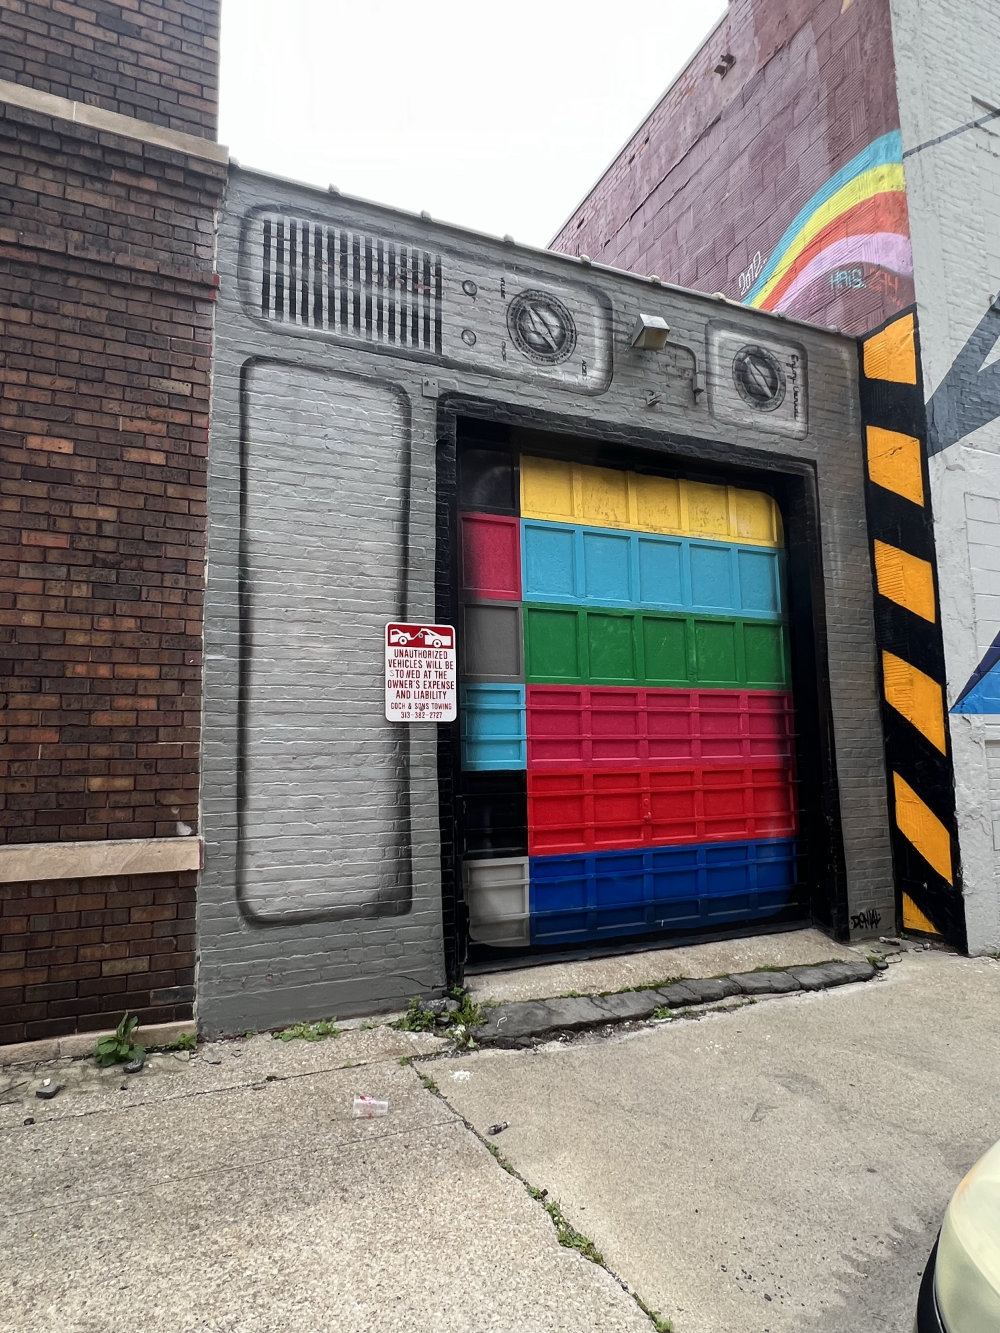 mural in Detroit by artist Denial.